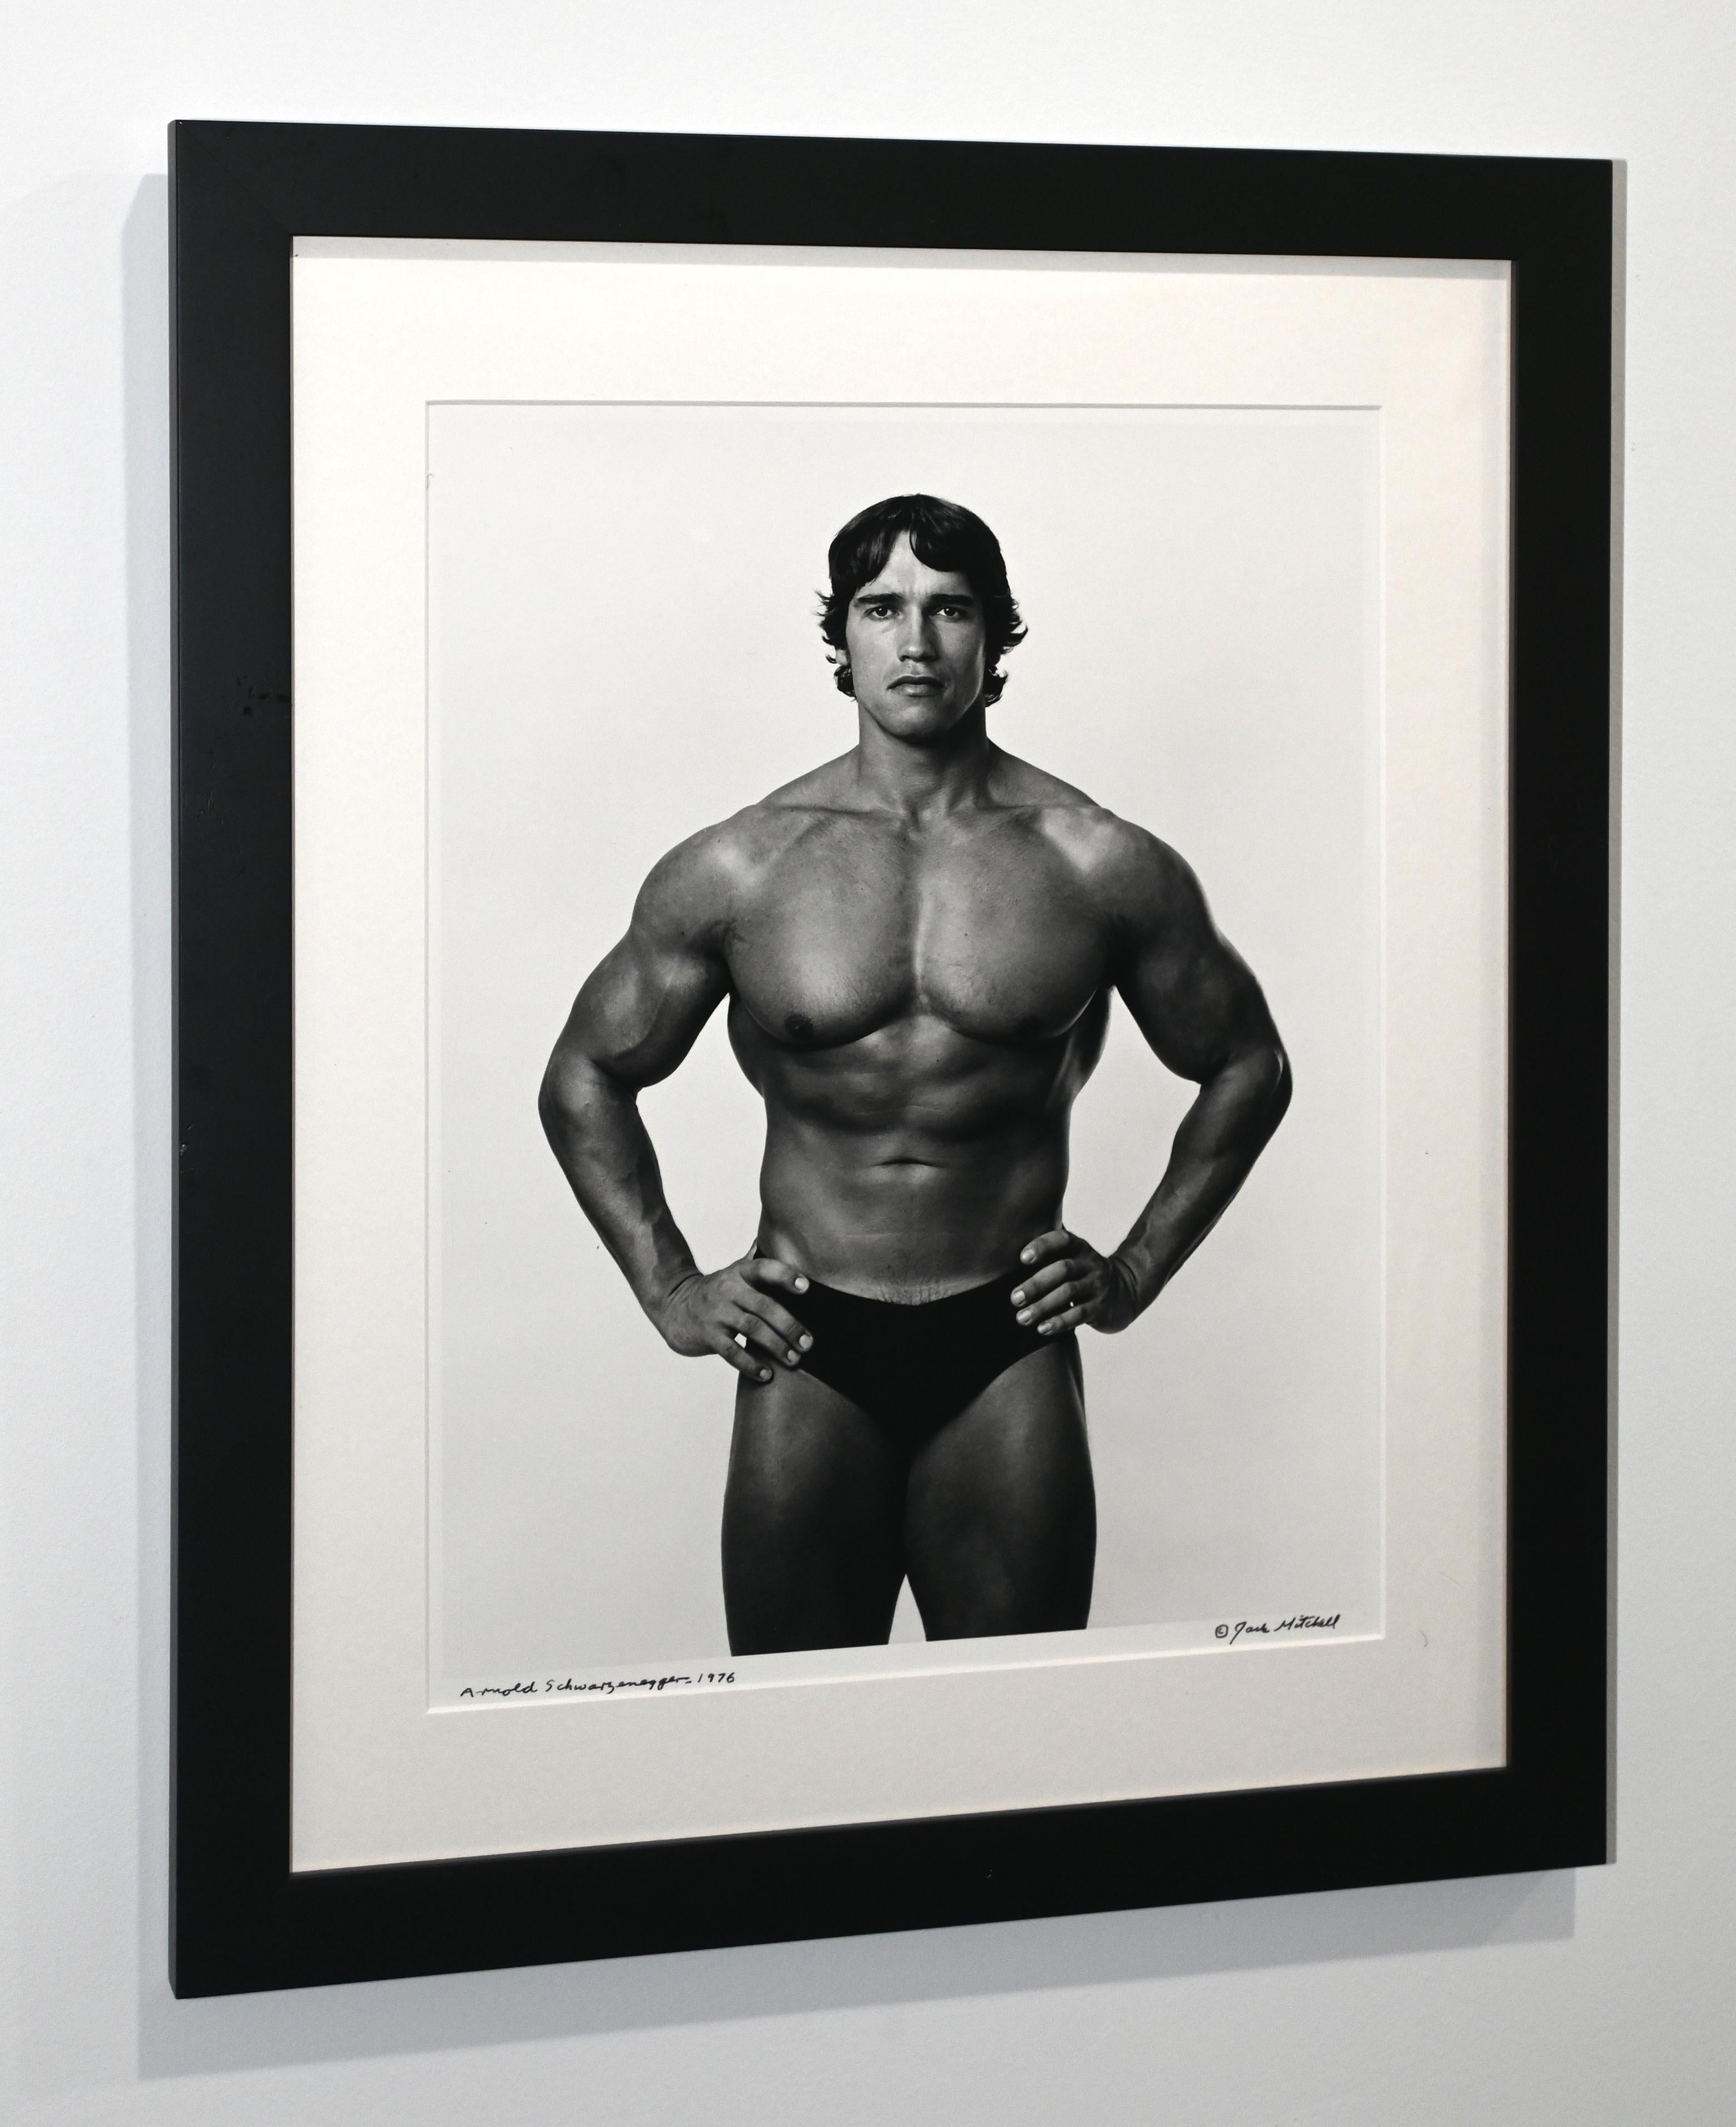 Black and White Photograph Jack Mitchell - Arnold Schwarzenegger - Portrait encadré, photo signée vintage